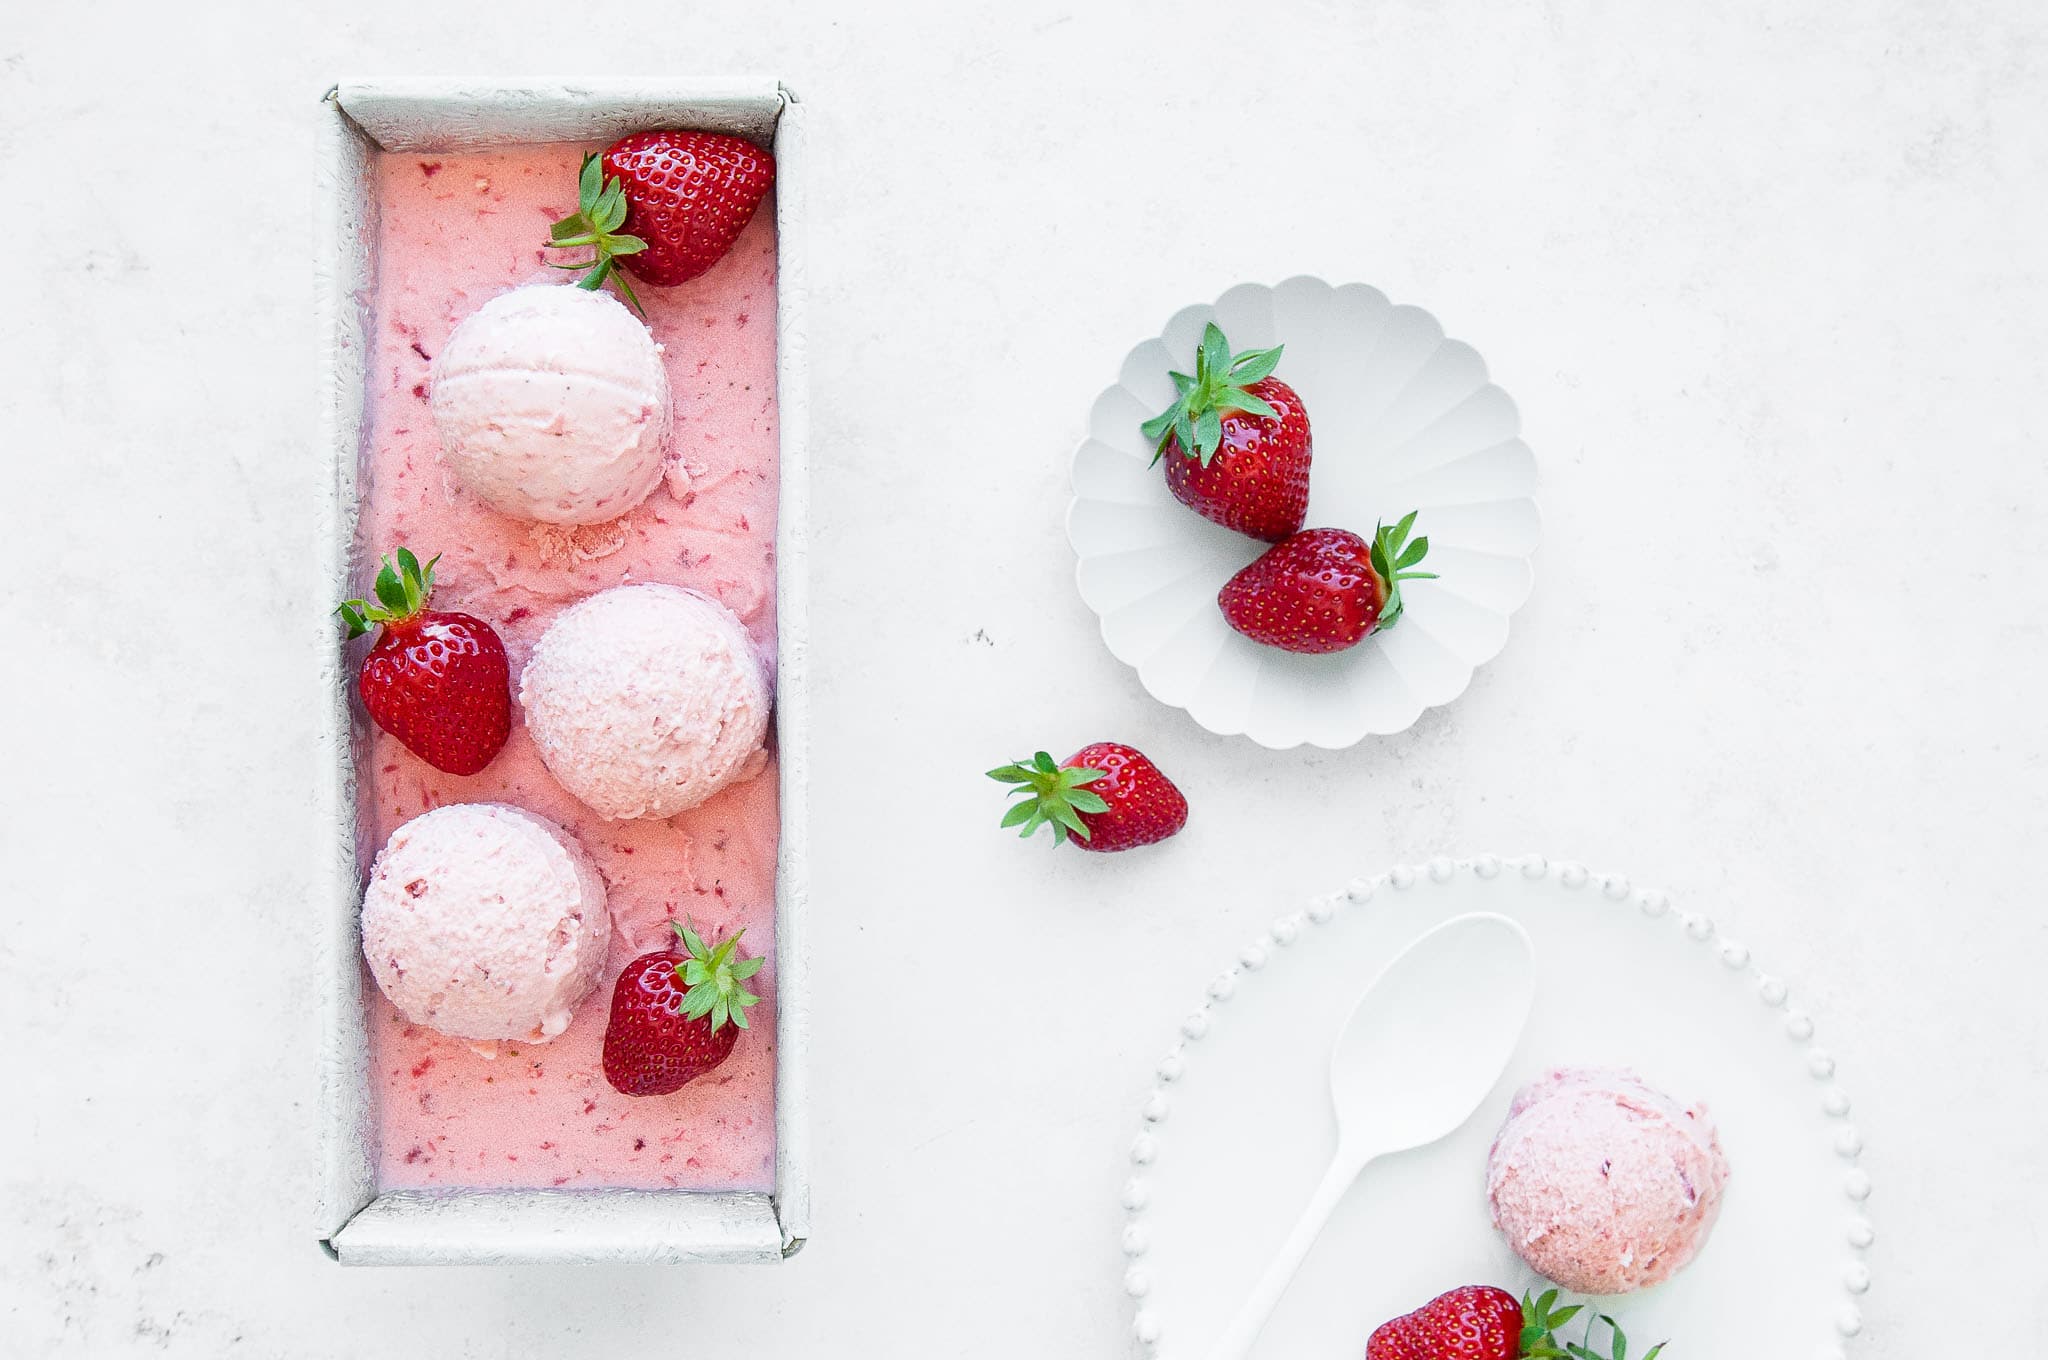 homemade strawberry ice cream with fresh strawberries